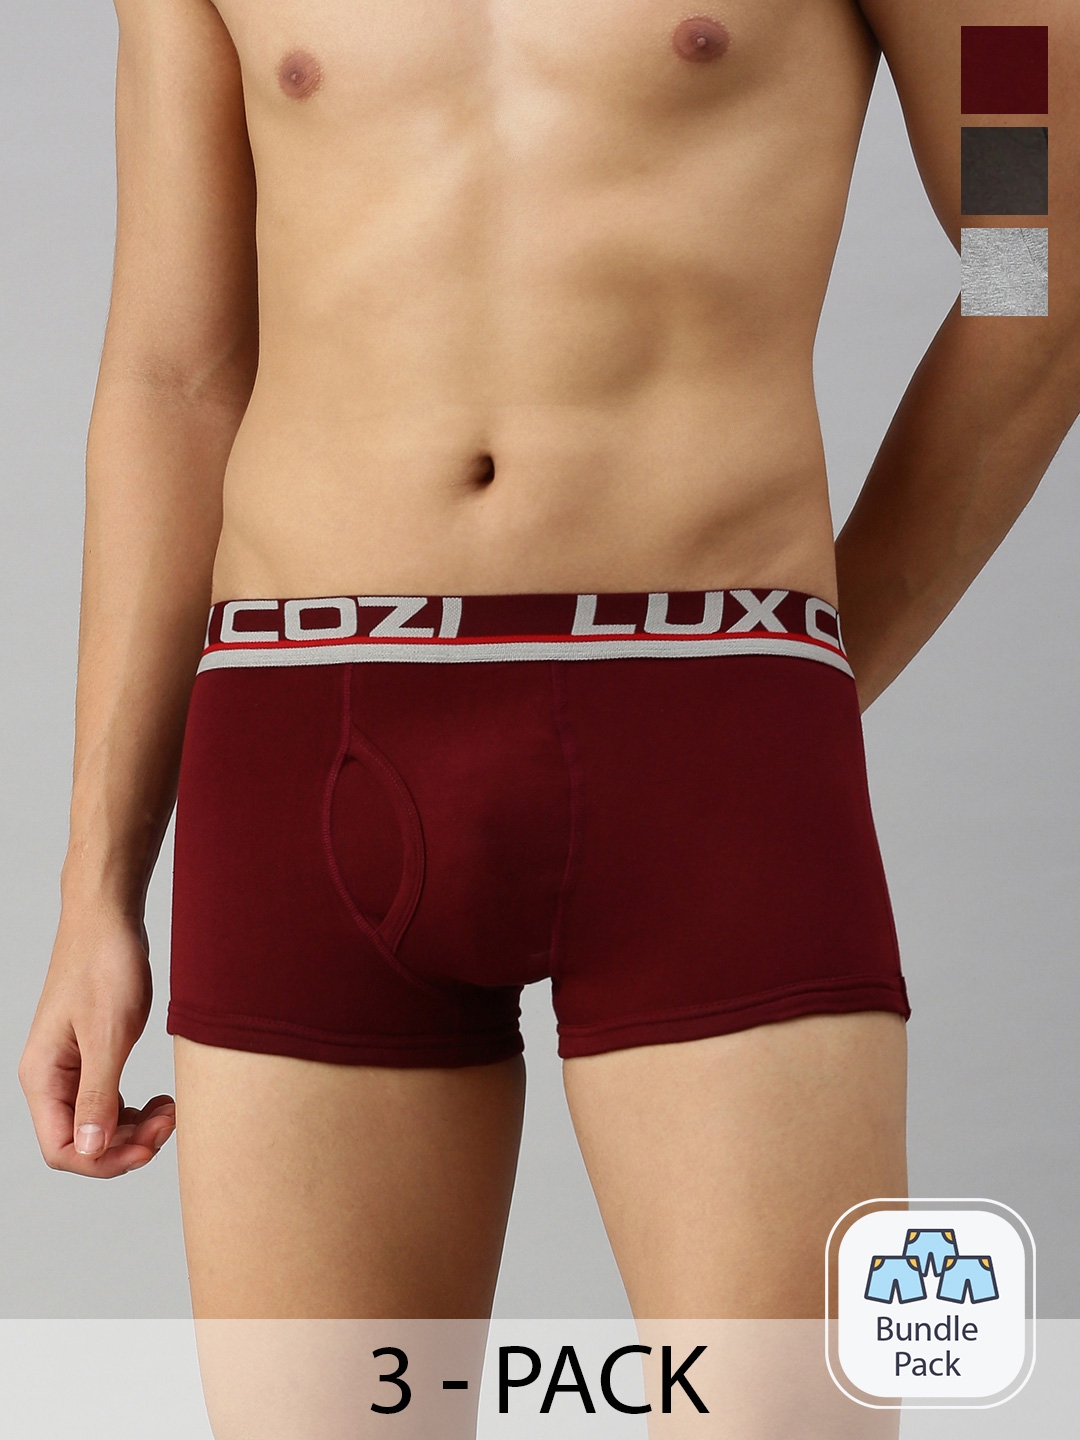 Lux Cozi Men's Cotton Briefs underwear - Pack of 3 support